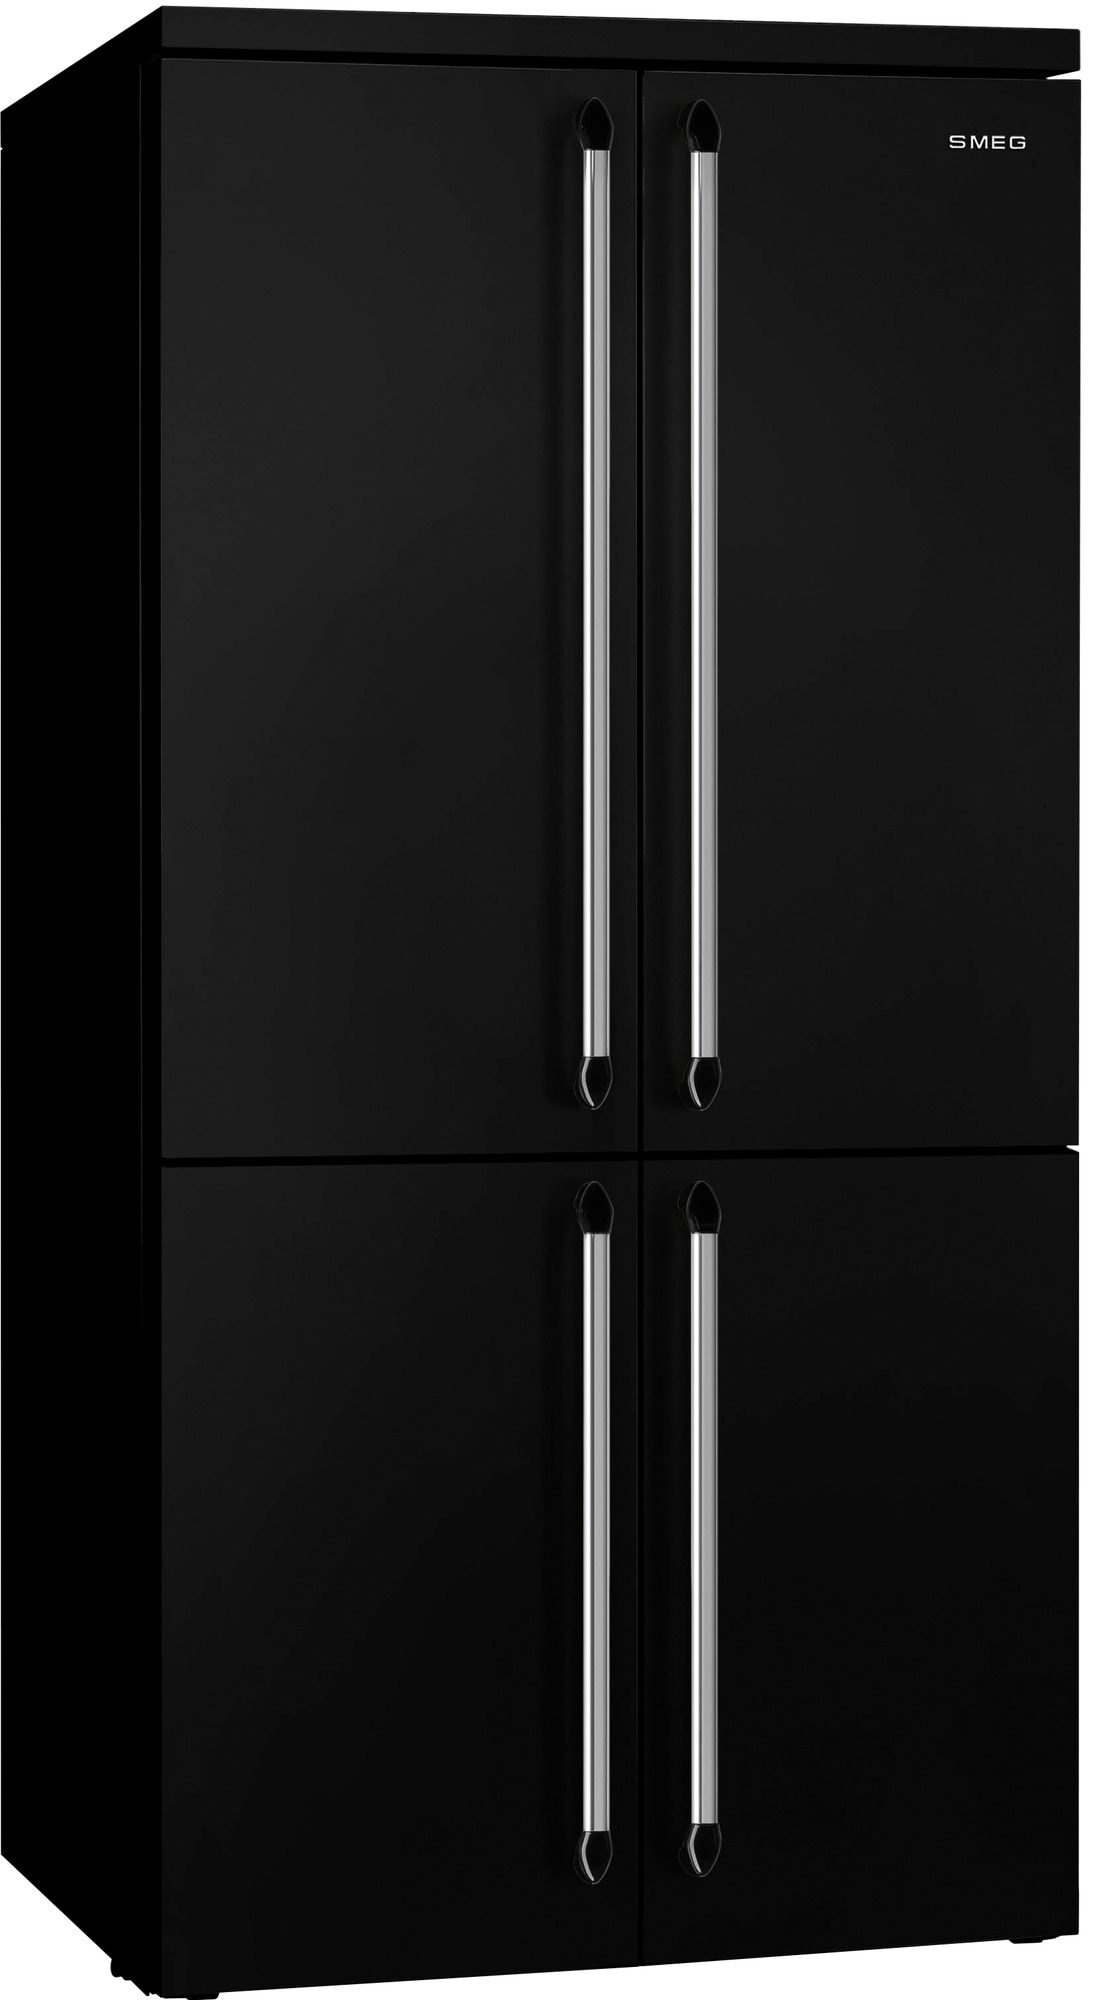 Smeg franskdørs-køleskab/fryser FQ960BL5 (sort)